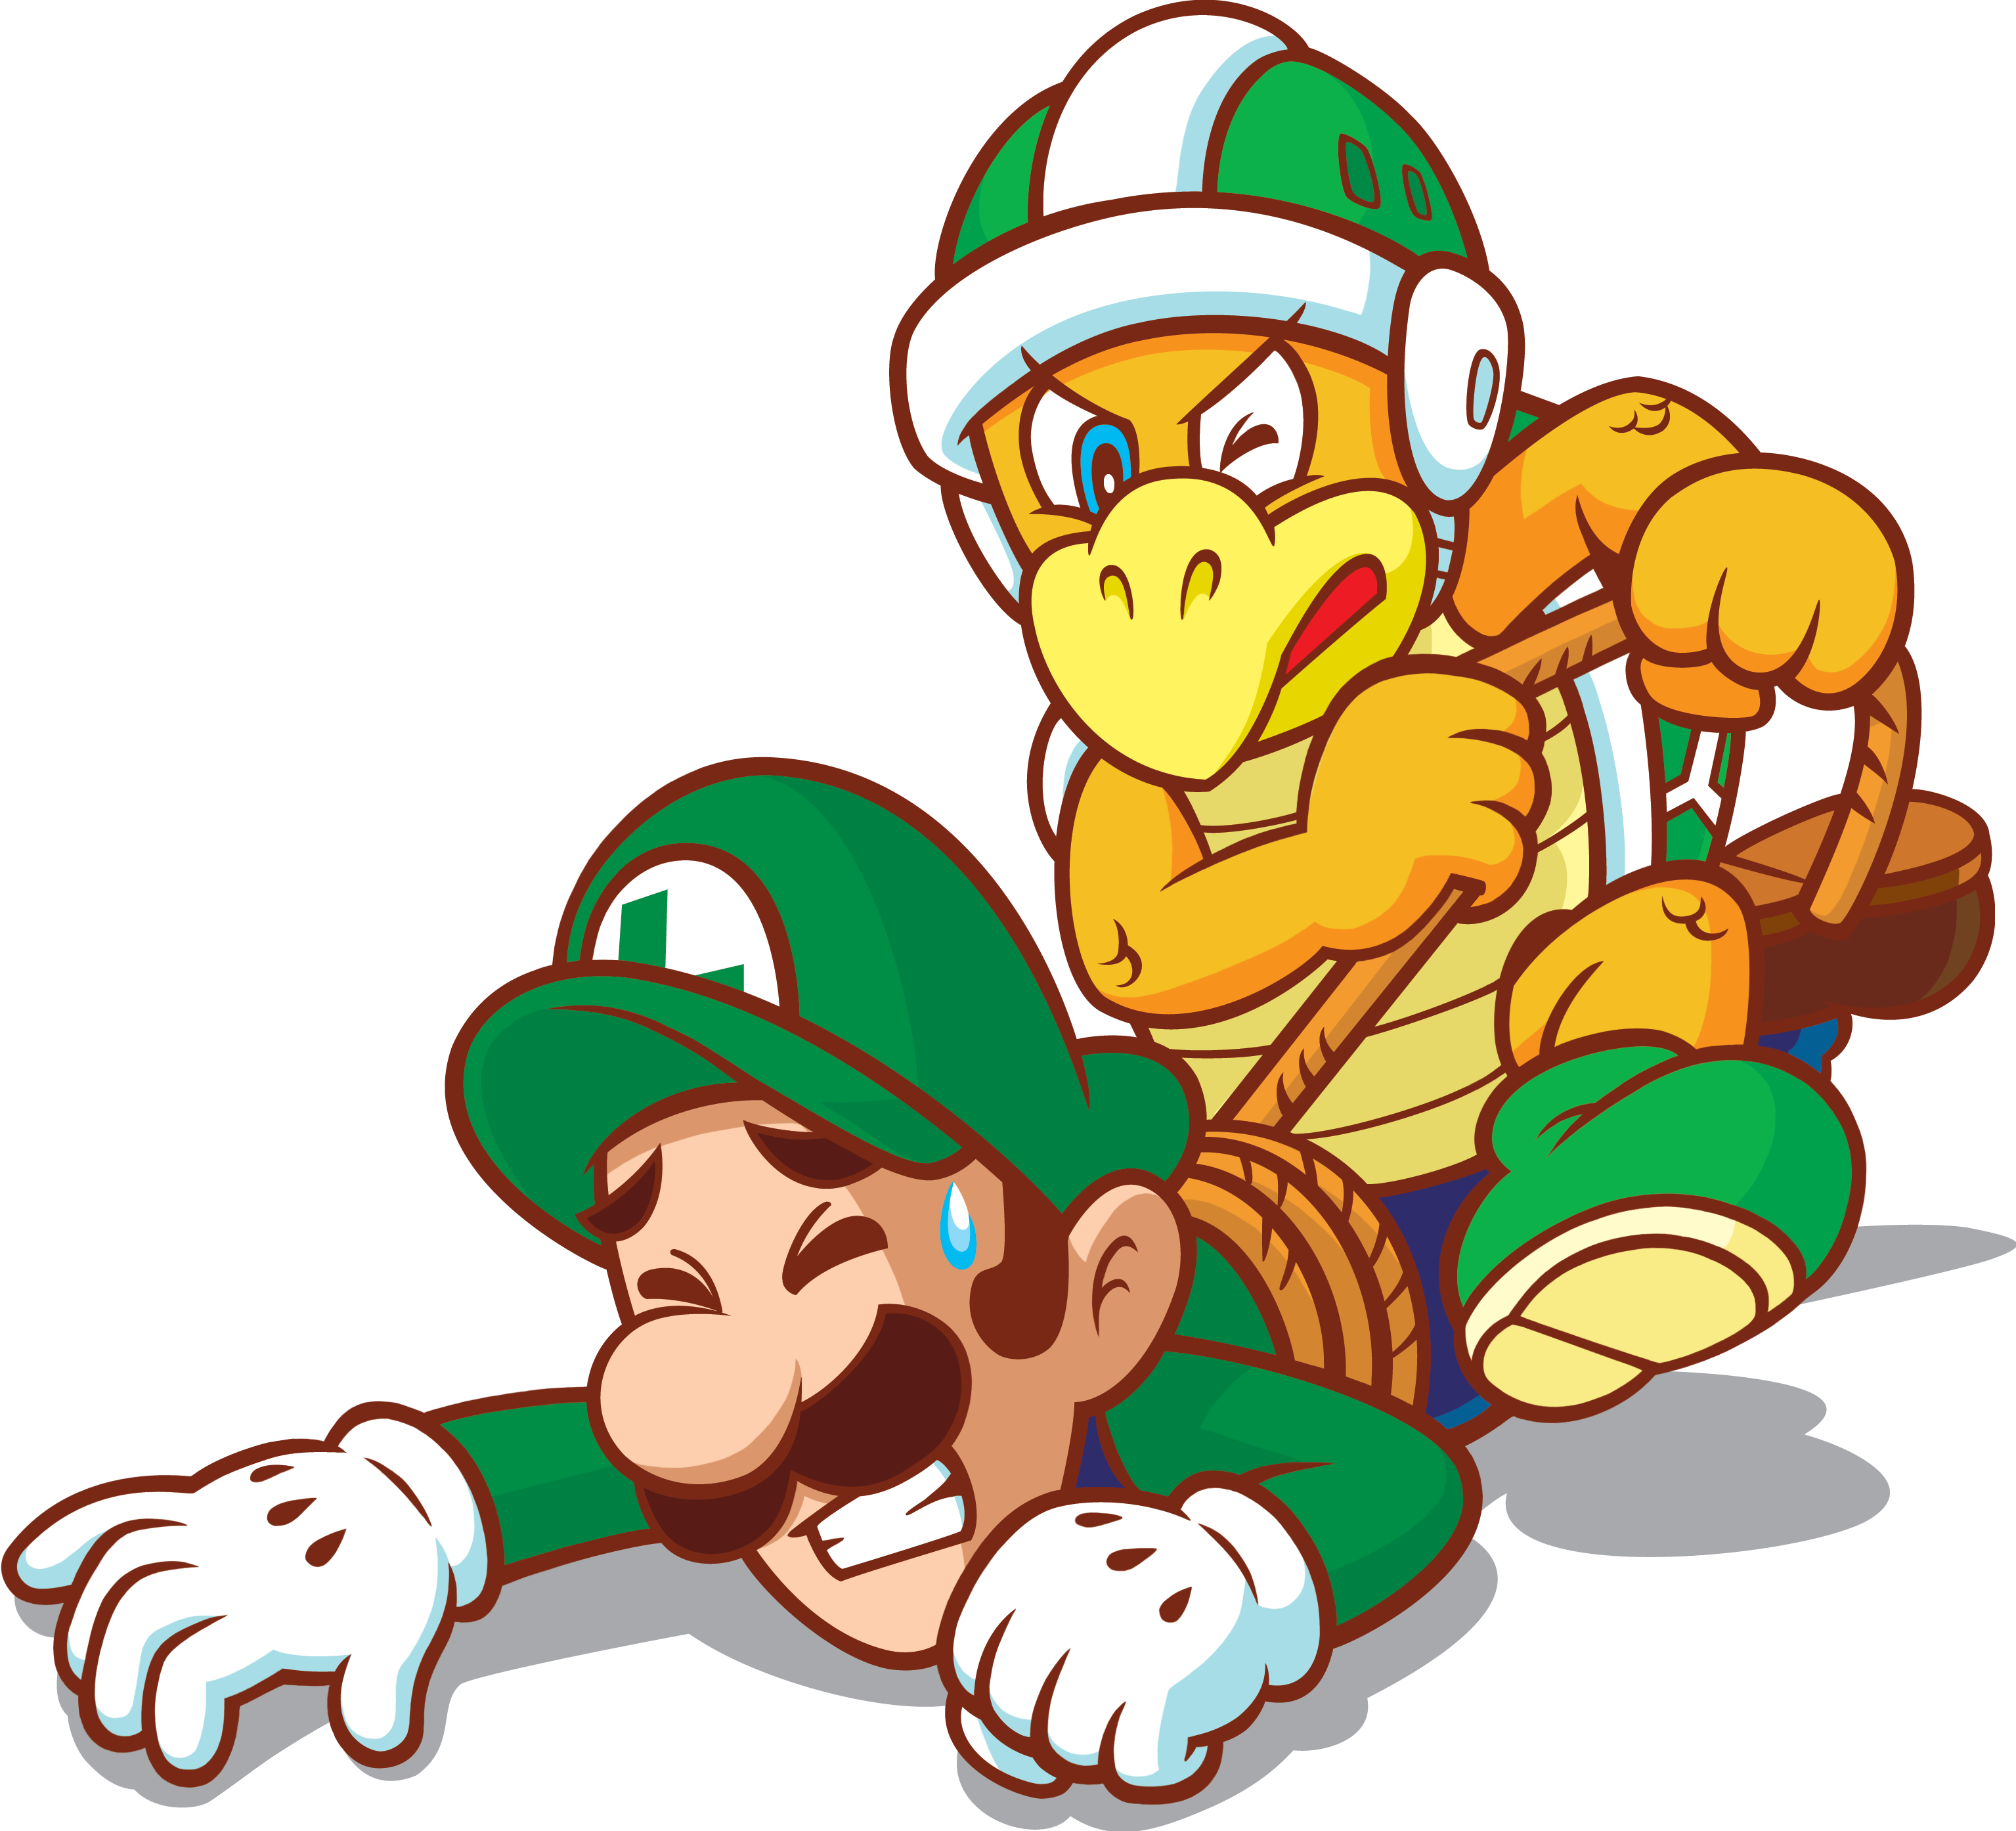 Mario bros special. Супер Марио и Луиджи. Луиджи БРОС. Марио персонажи Луиджи. Марио и Луиджи арт.